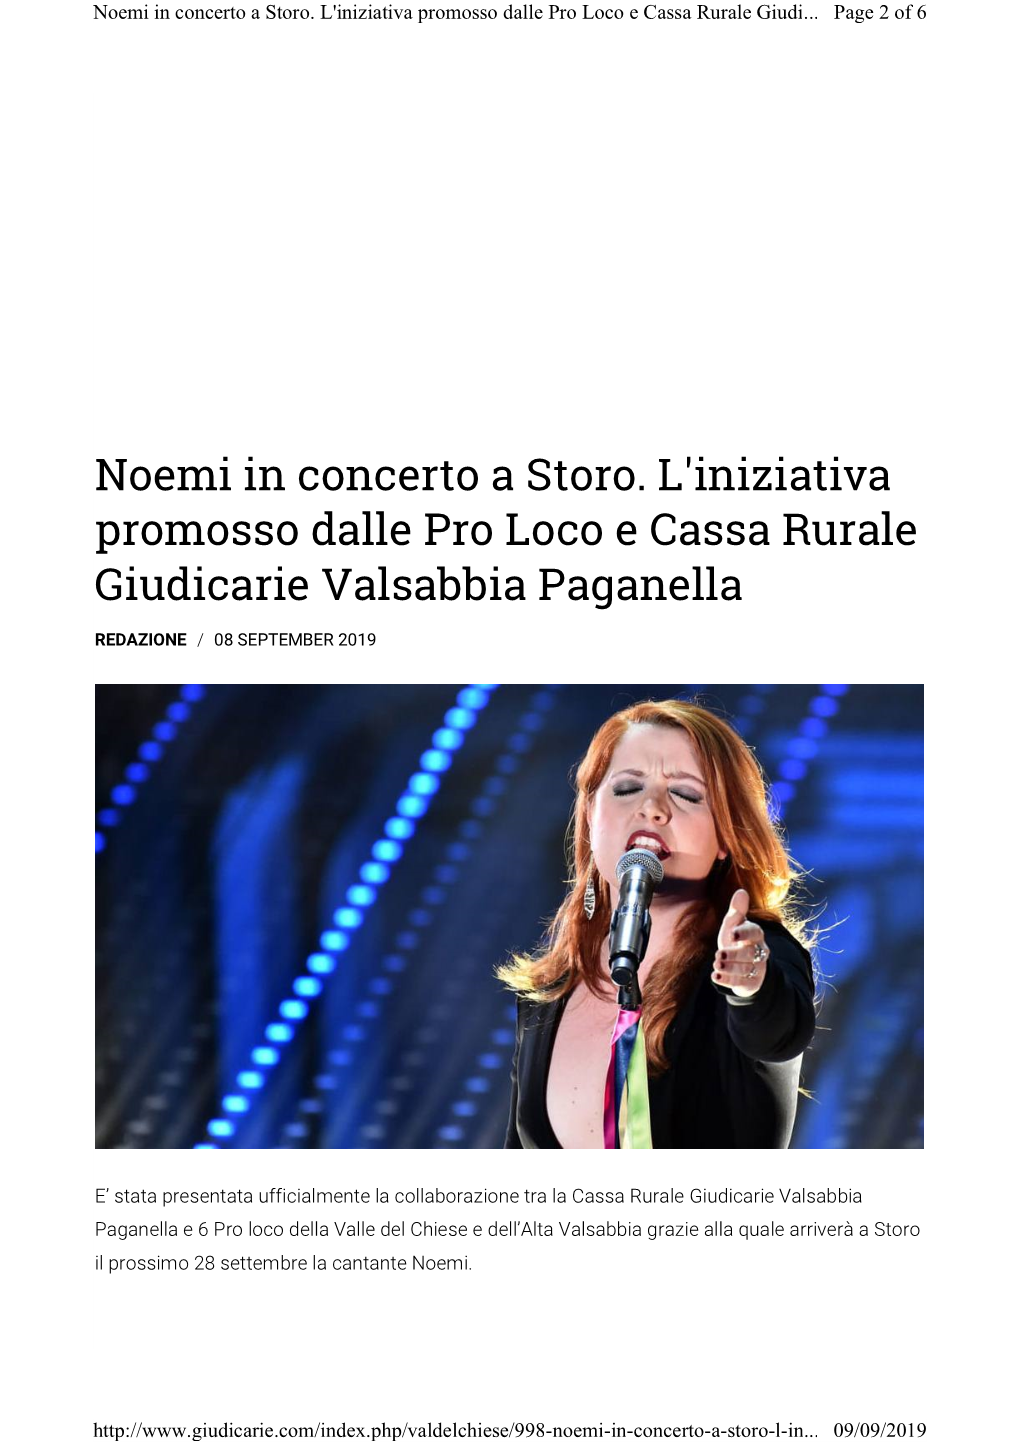 Noemi in Concerto a Storo. L'iniziativa Promosso Dalle Pro Loco E Cassa Rurale Giudi